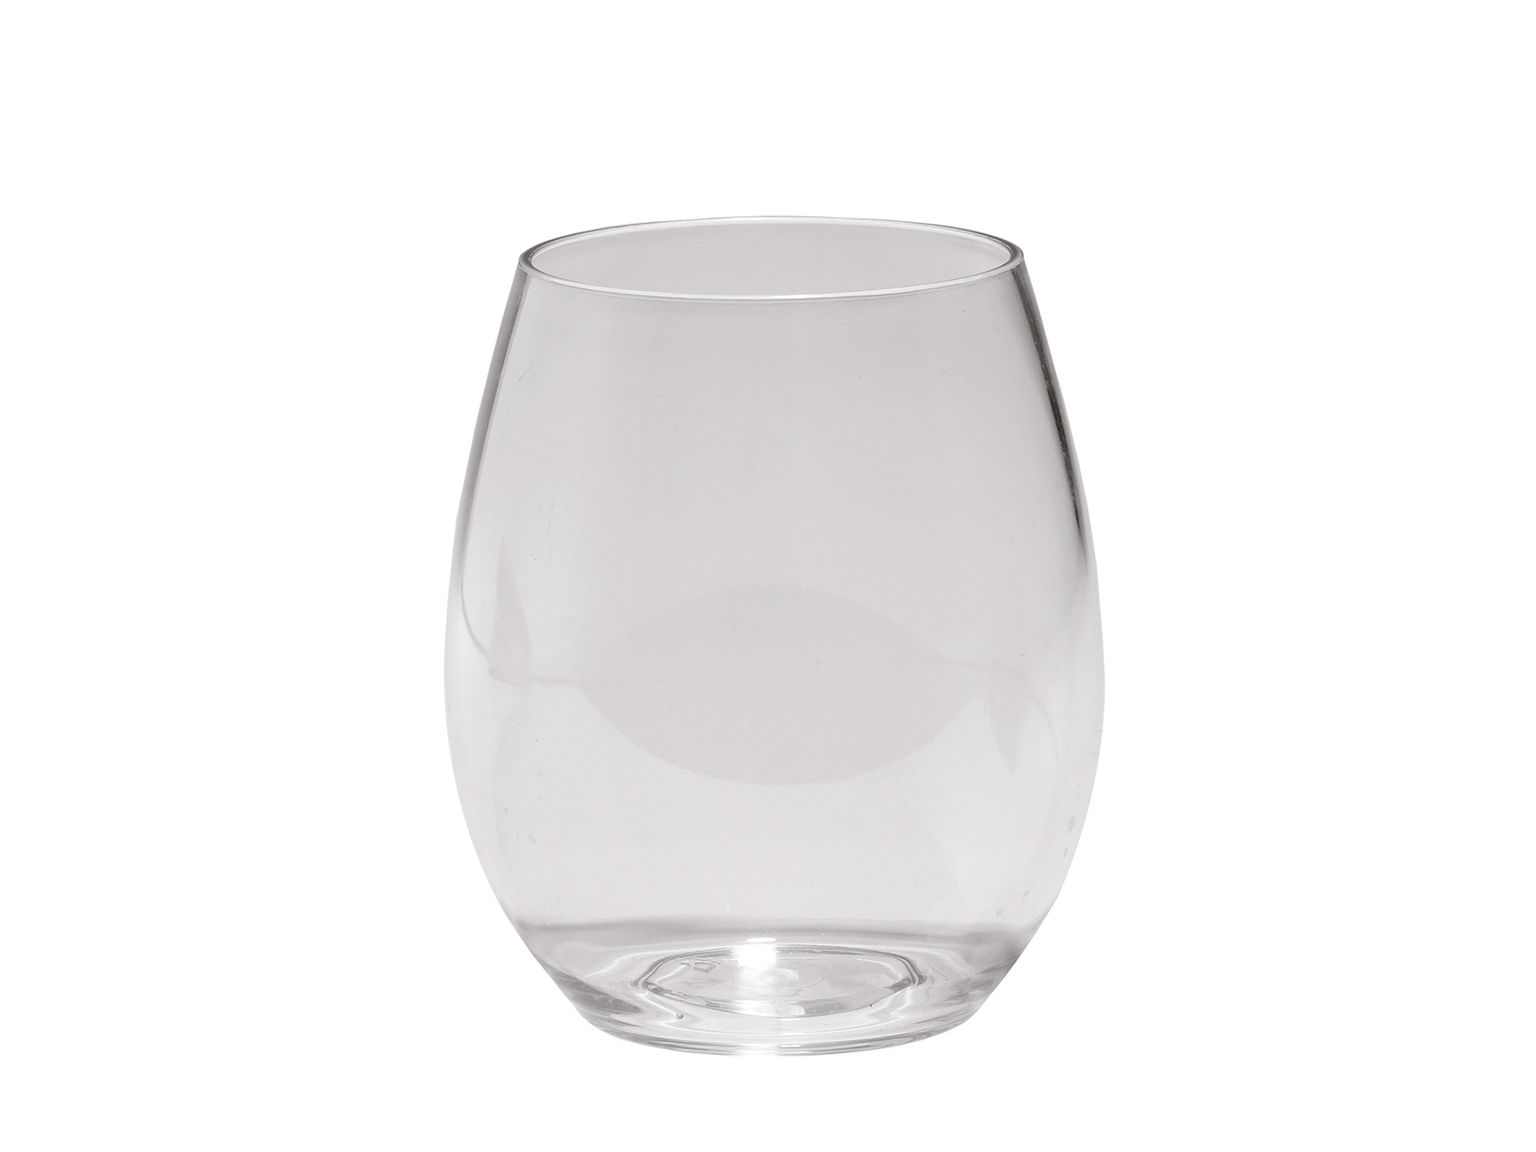 WASSERGLAS AUS KUNSTSTOFF (TRITAN)  Wasserglas aus Kunststoff (Tritan)